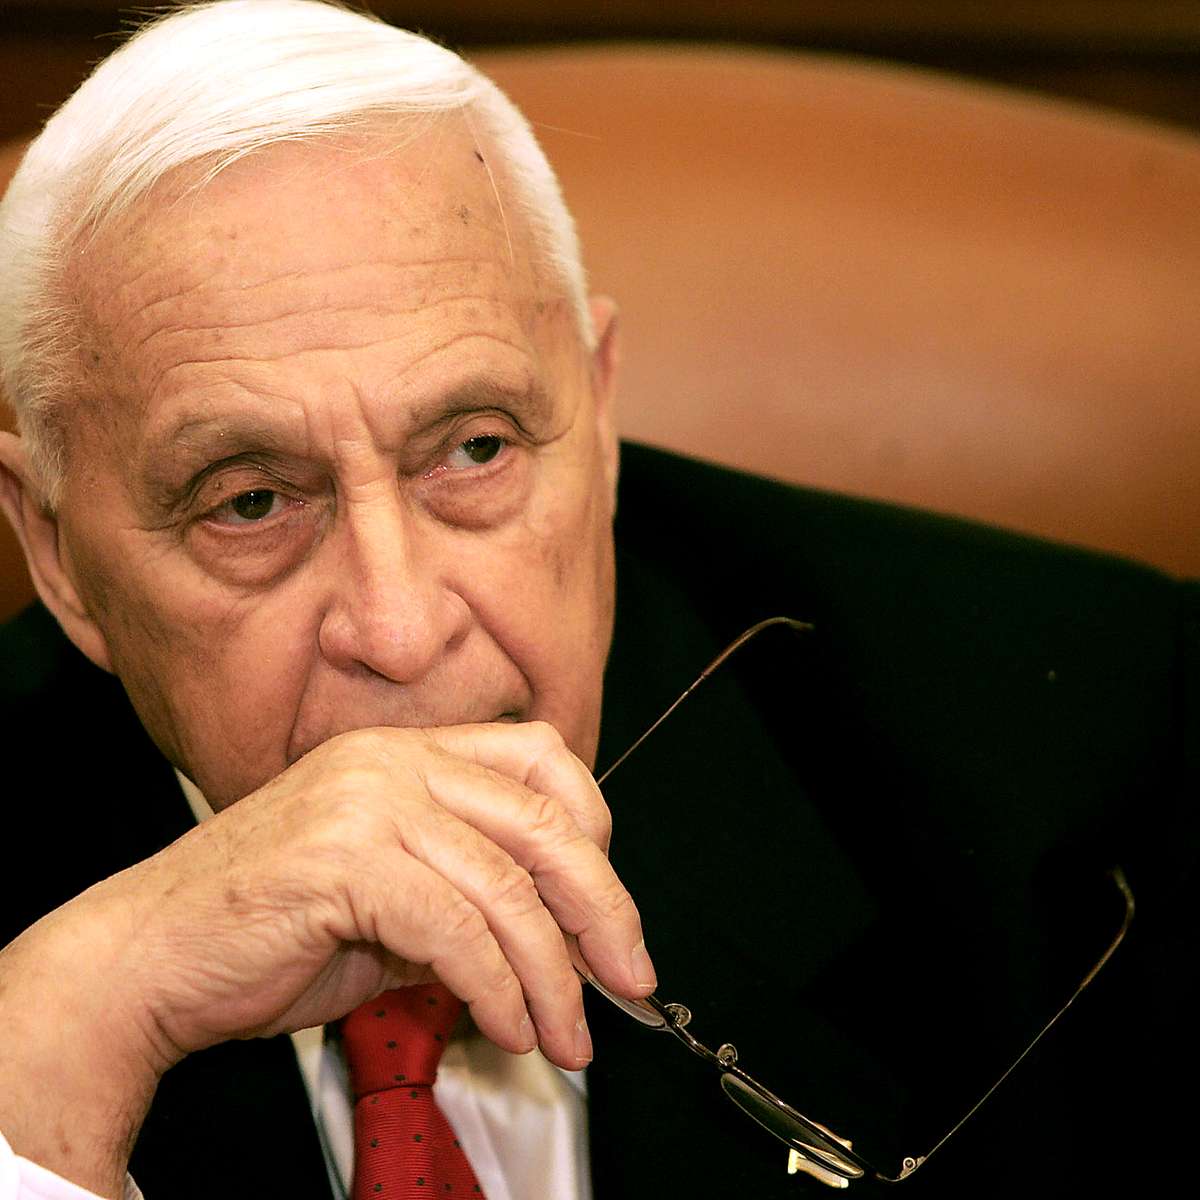 Morre ex-primeiro-ministro israelense Ariel Sharon após coma de